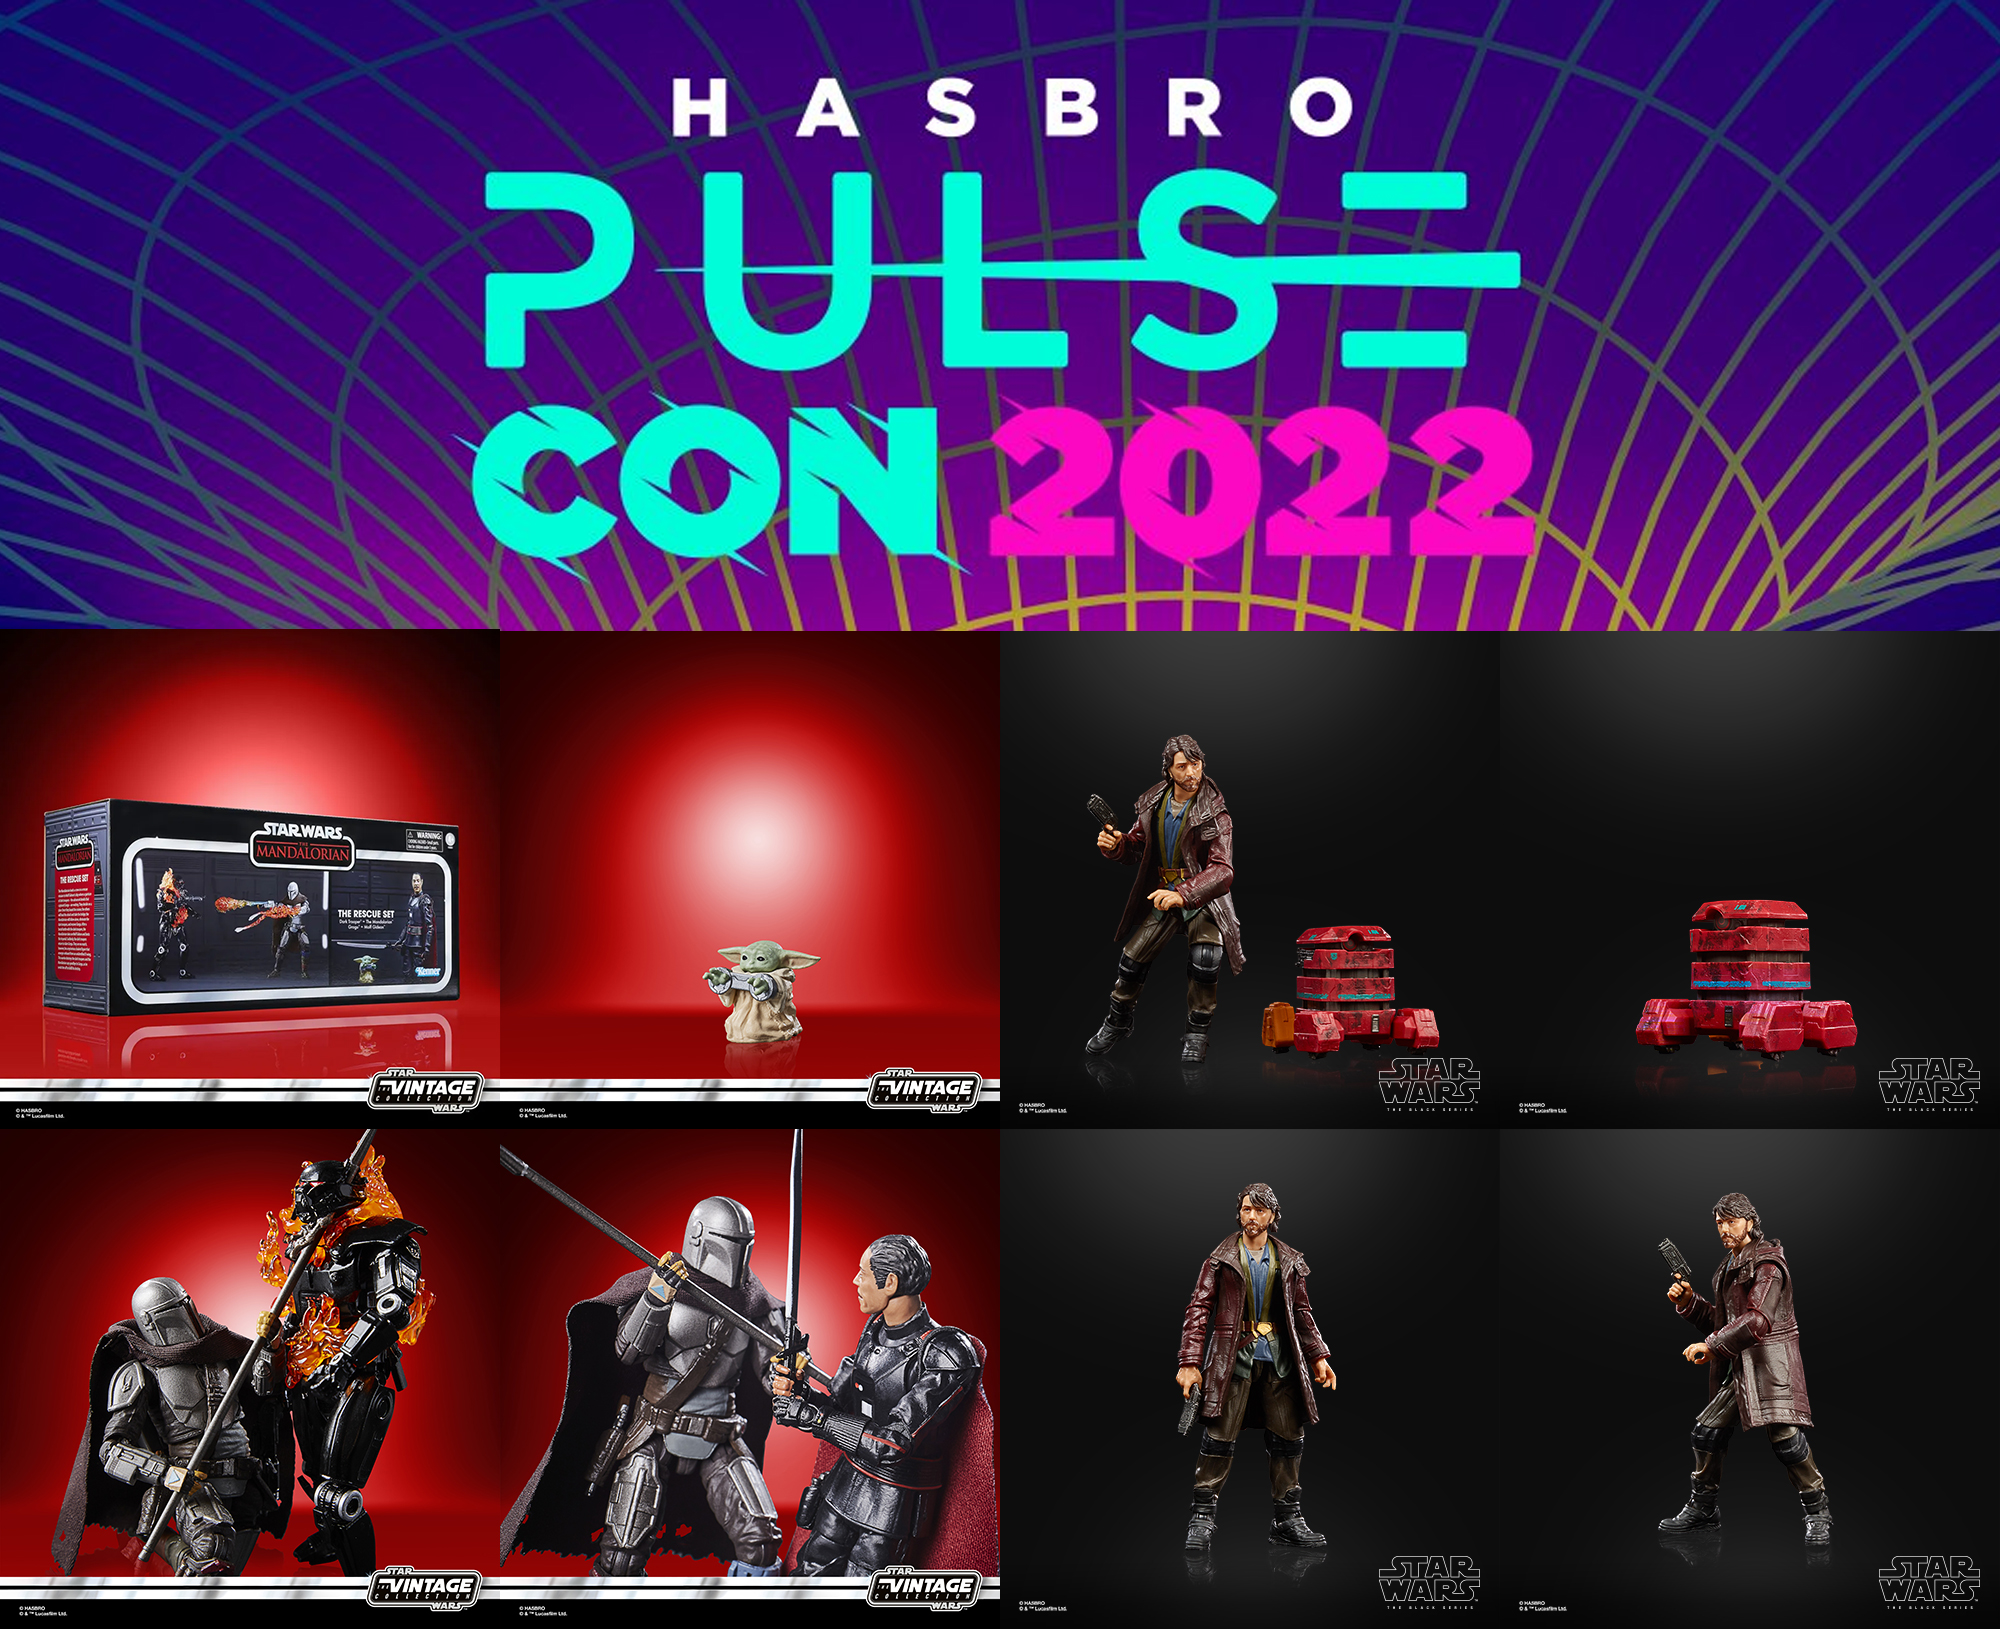 Hasbro Pulse Con 2022